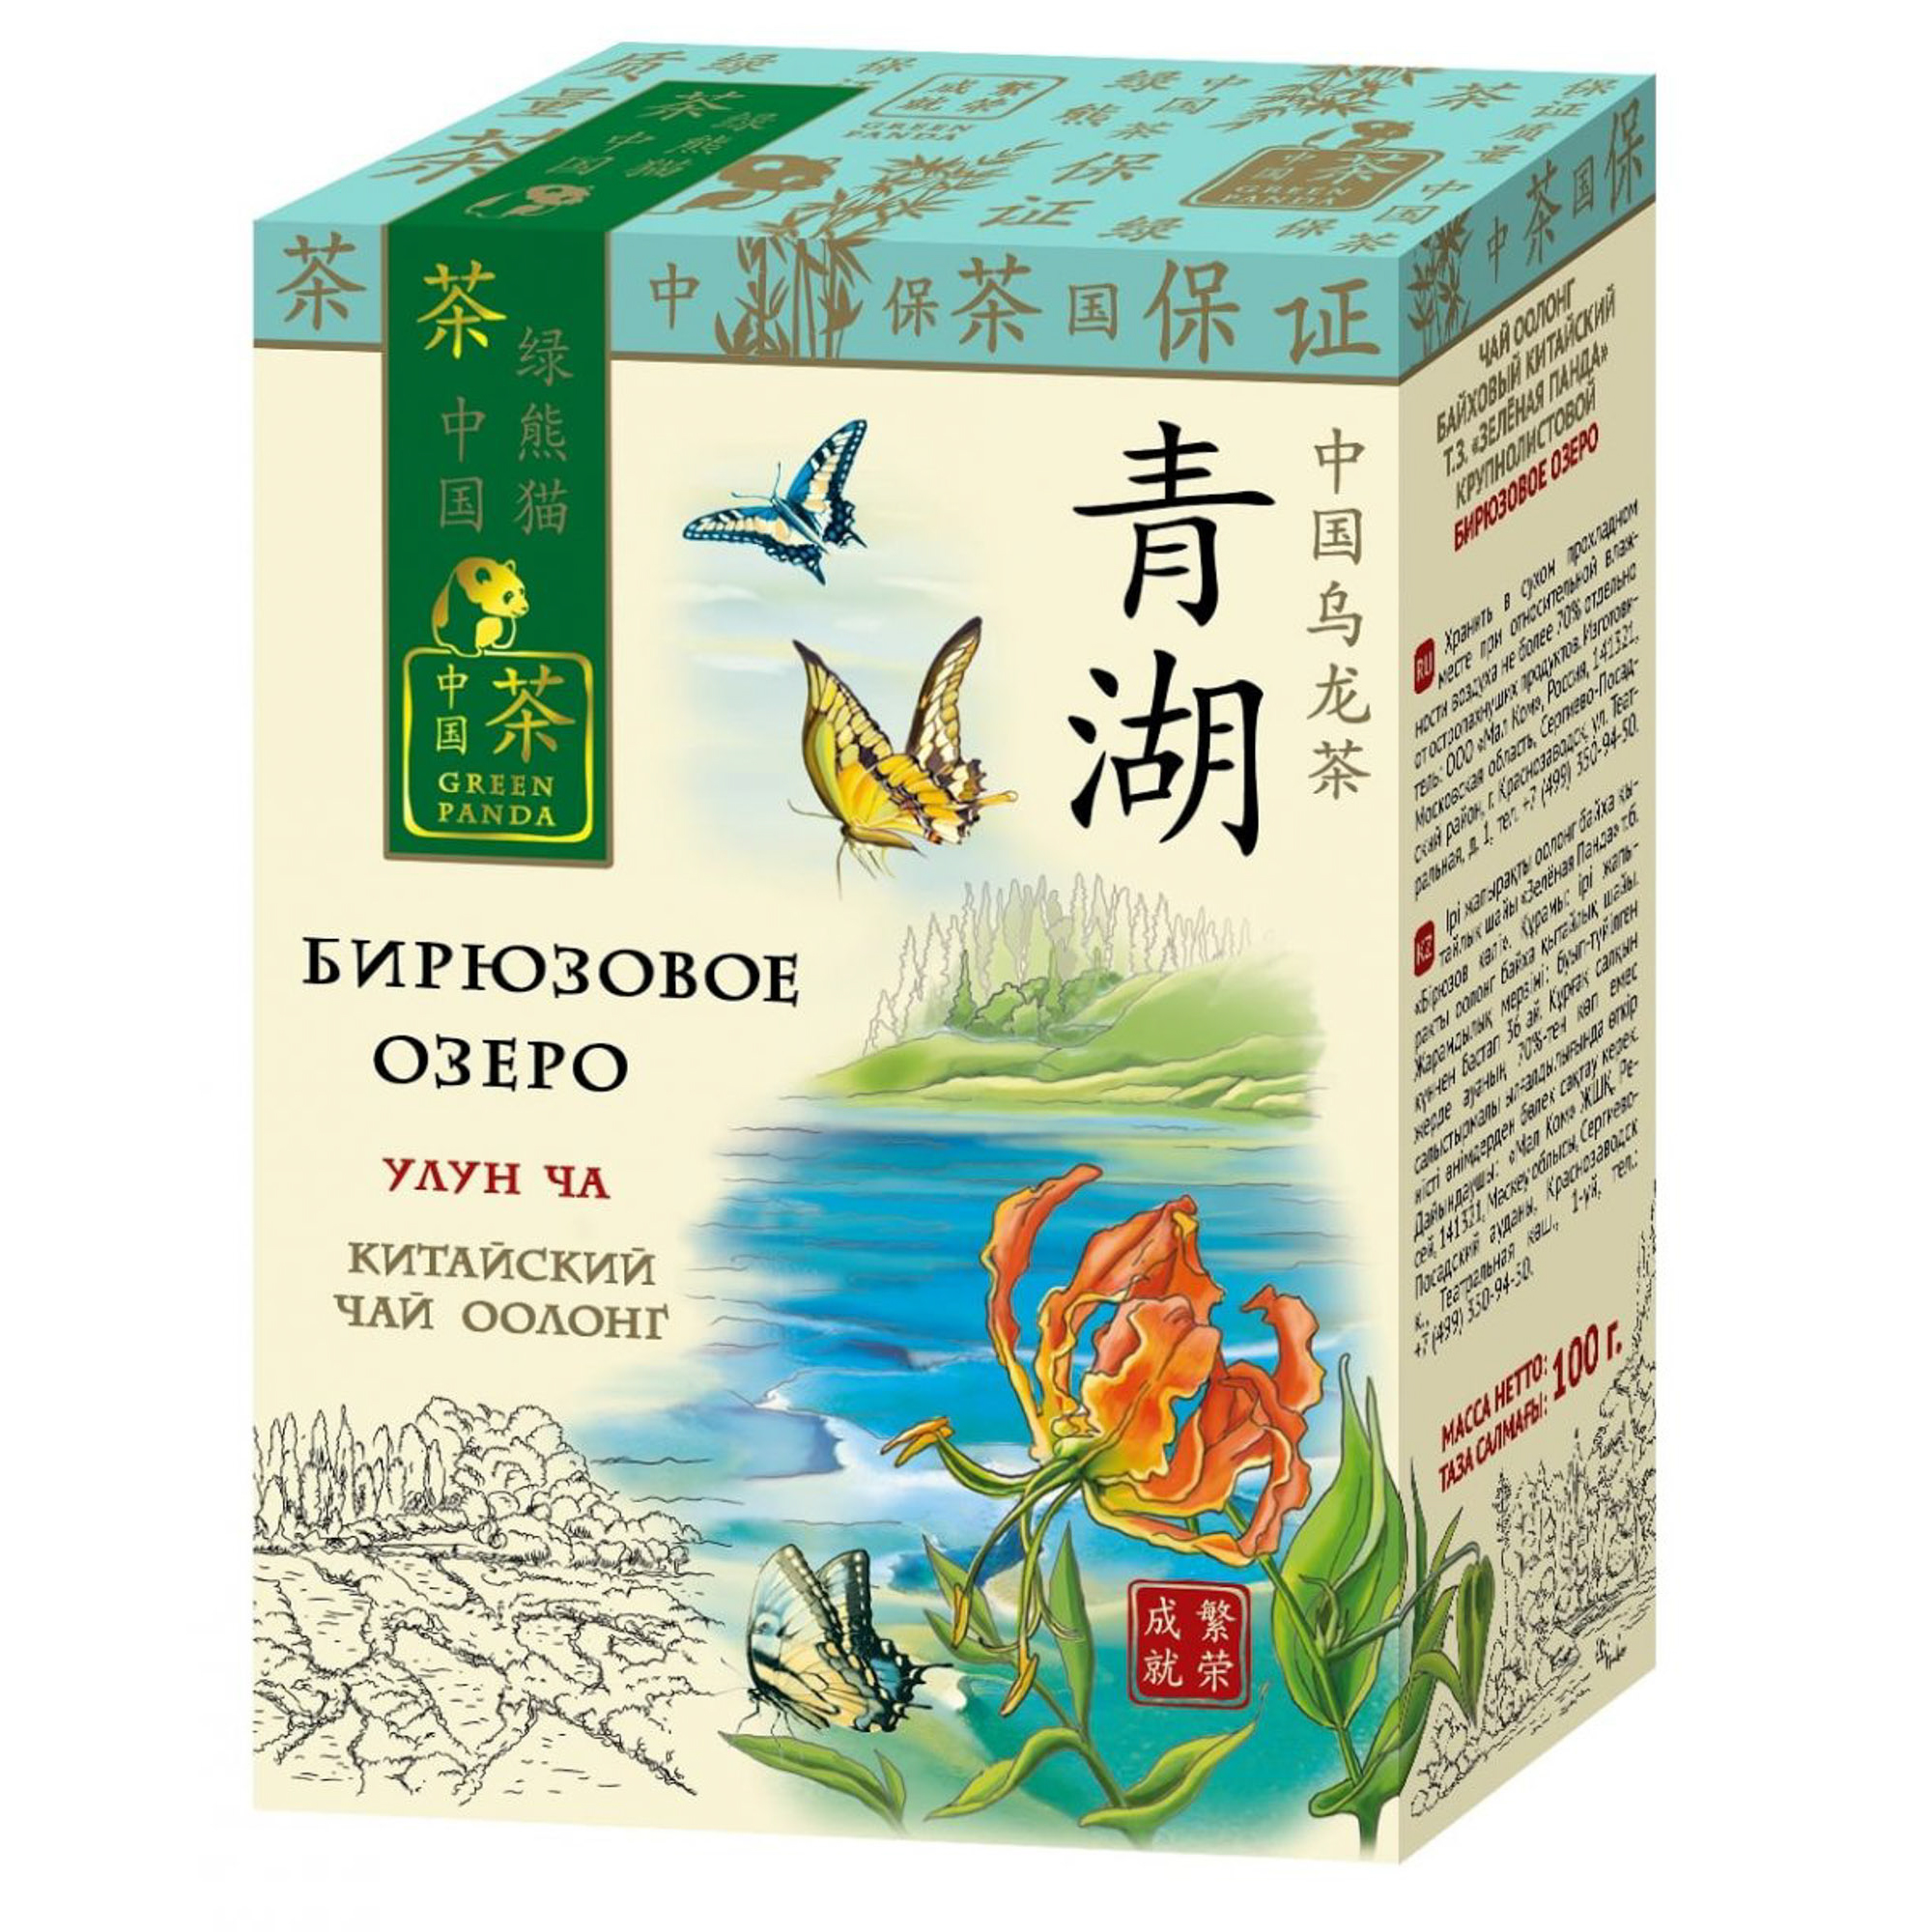 Чай зеленый Зеленая Панда Бирюзовое Озеро листовой 100 г чай зеленый листовой ча бао зеленый шелк китай 100 г